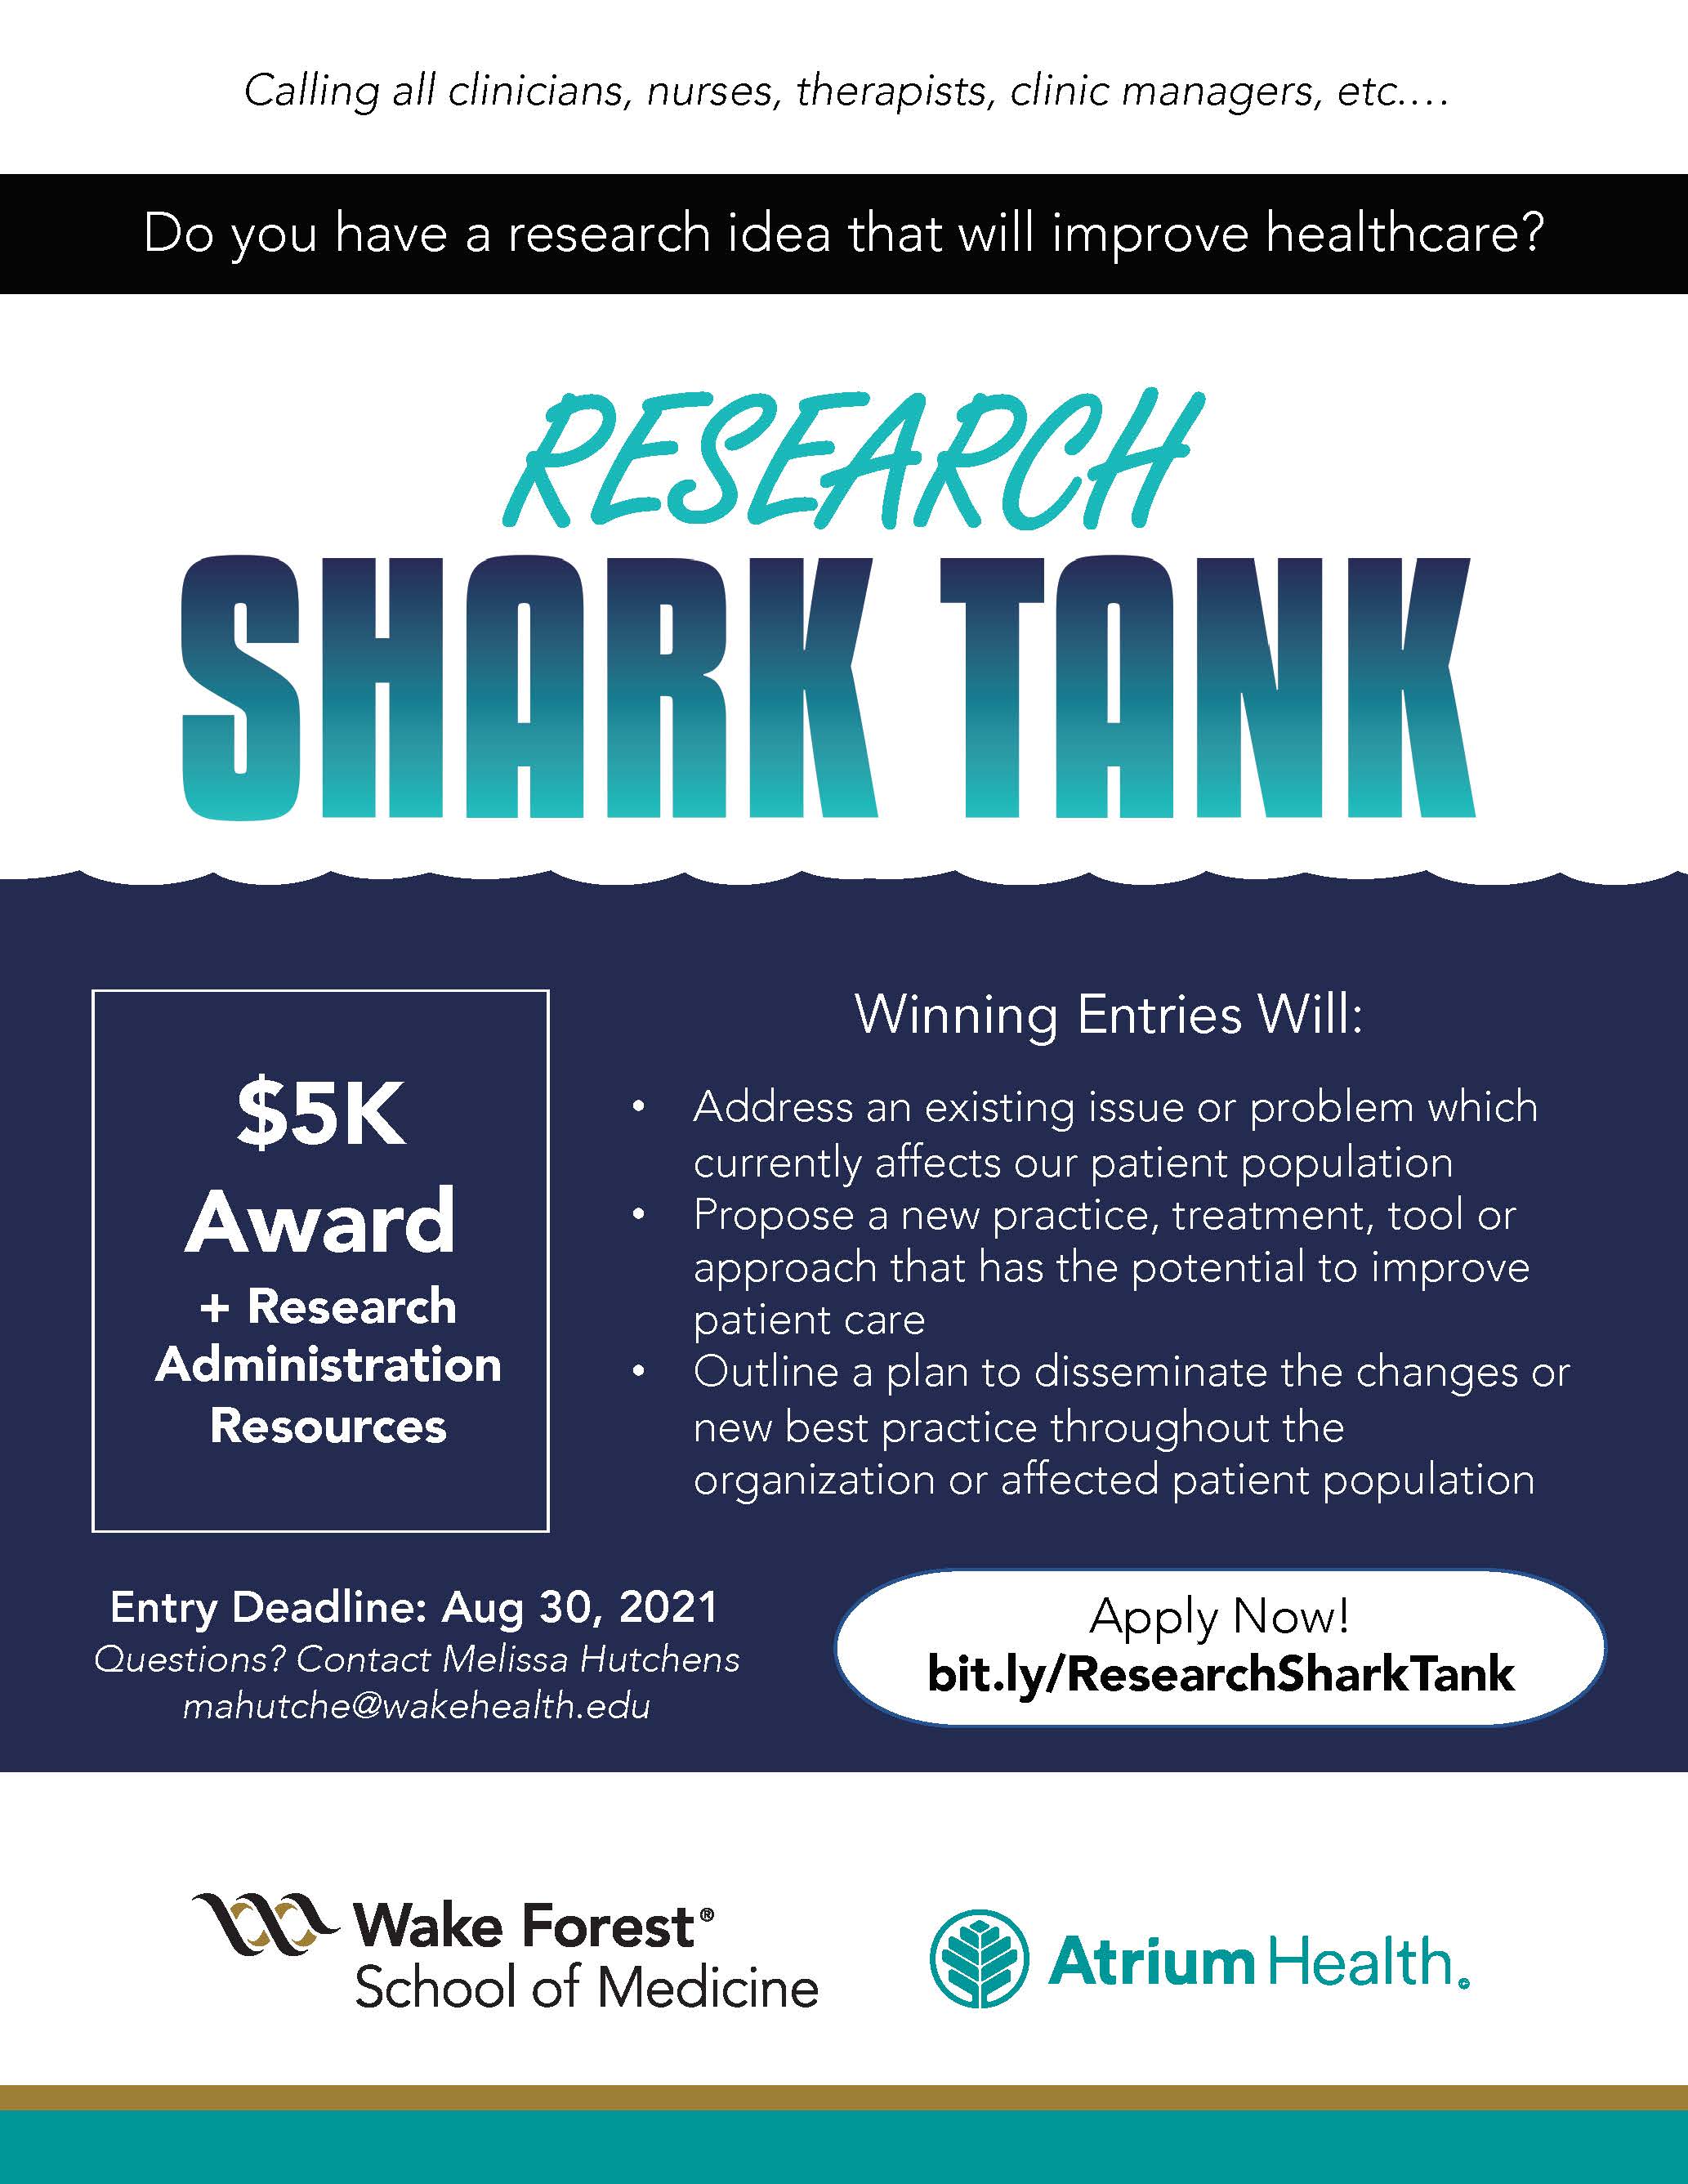 Sept 2021 Research Shark Tank Flier